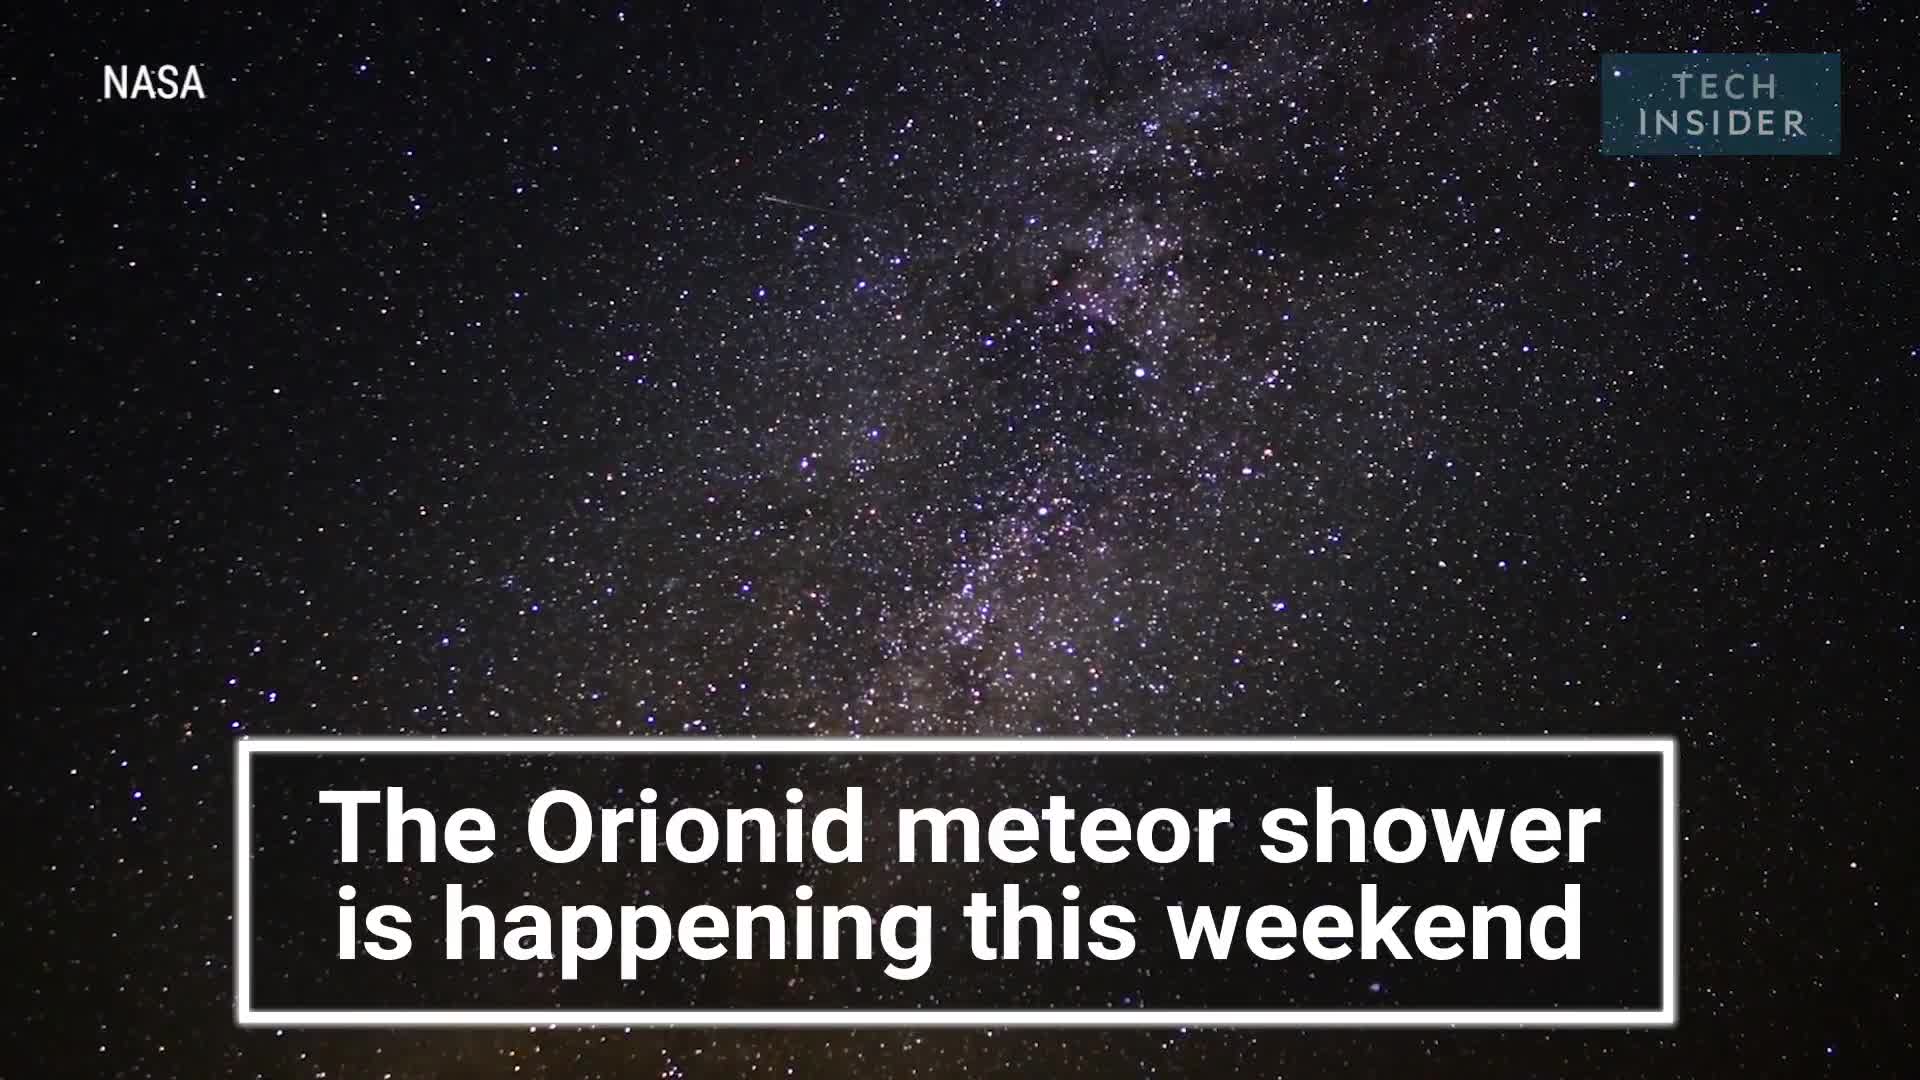 Địa điểm, thời gian và cách thức giúp bạn quan sát được mưa sao băng Orionids từ tối 20/10 đến 22/10